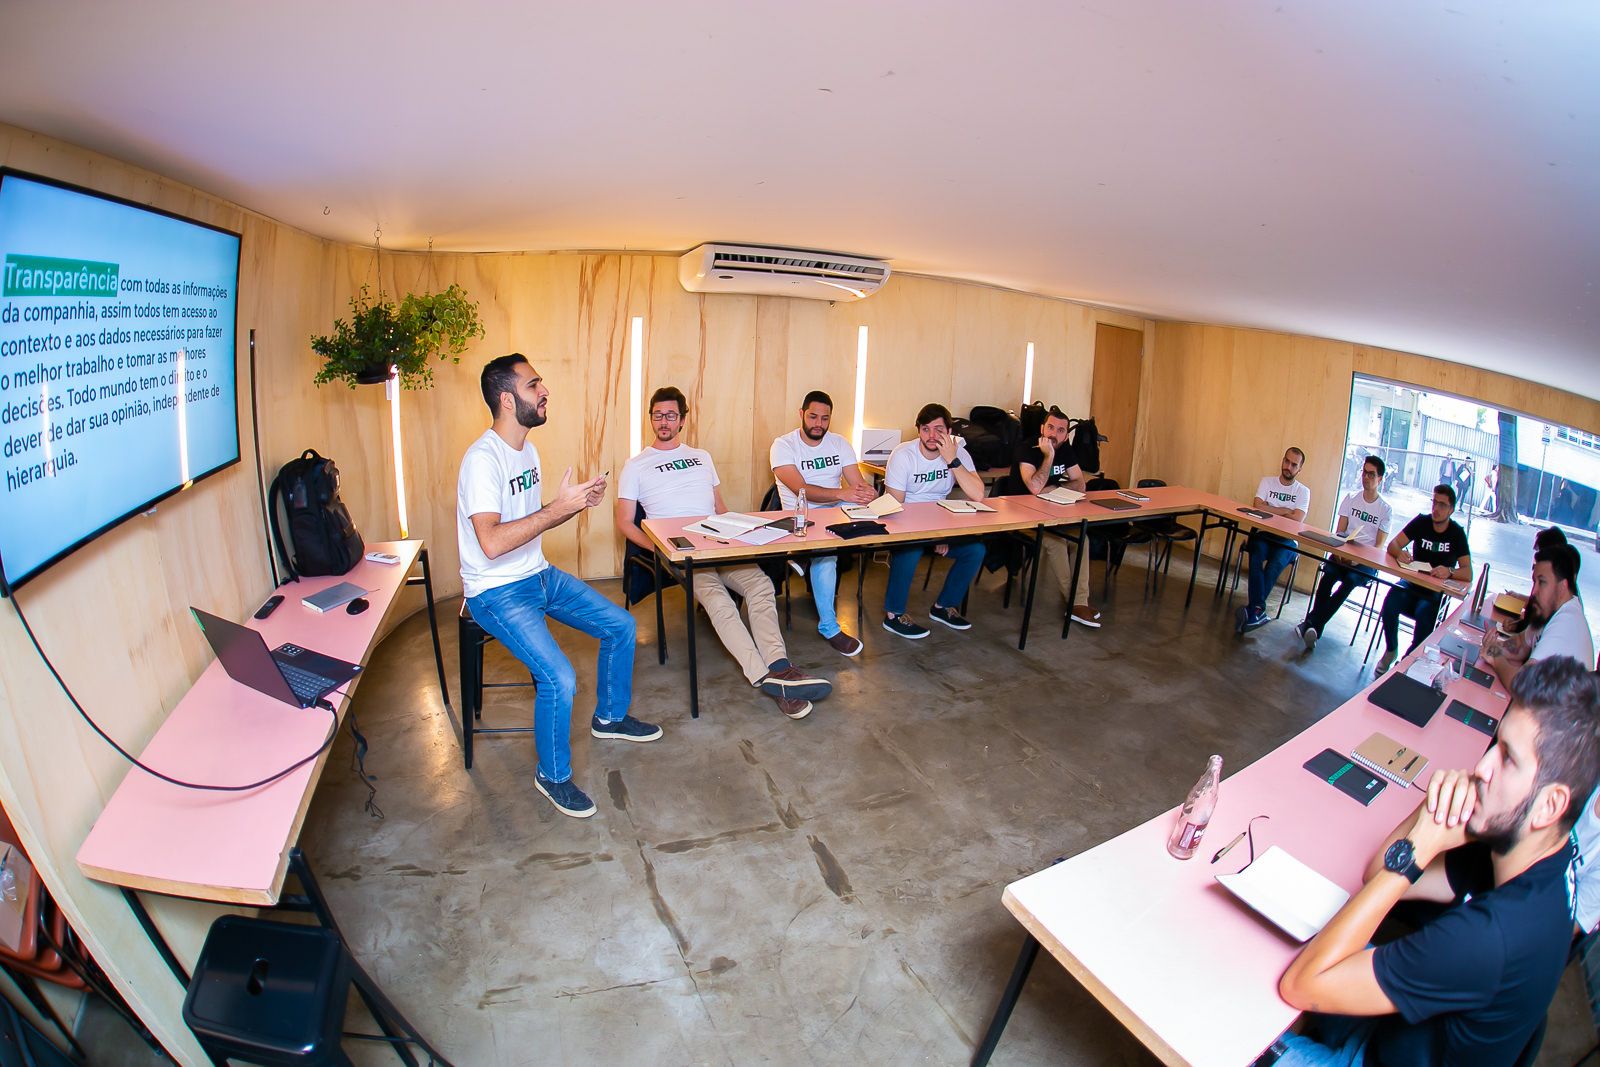 Trybe é uma das startups selecionadas para participar do StartUp CUP 2020, em San Diego (EUA)